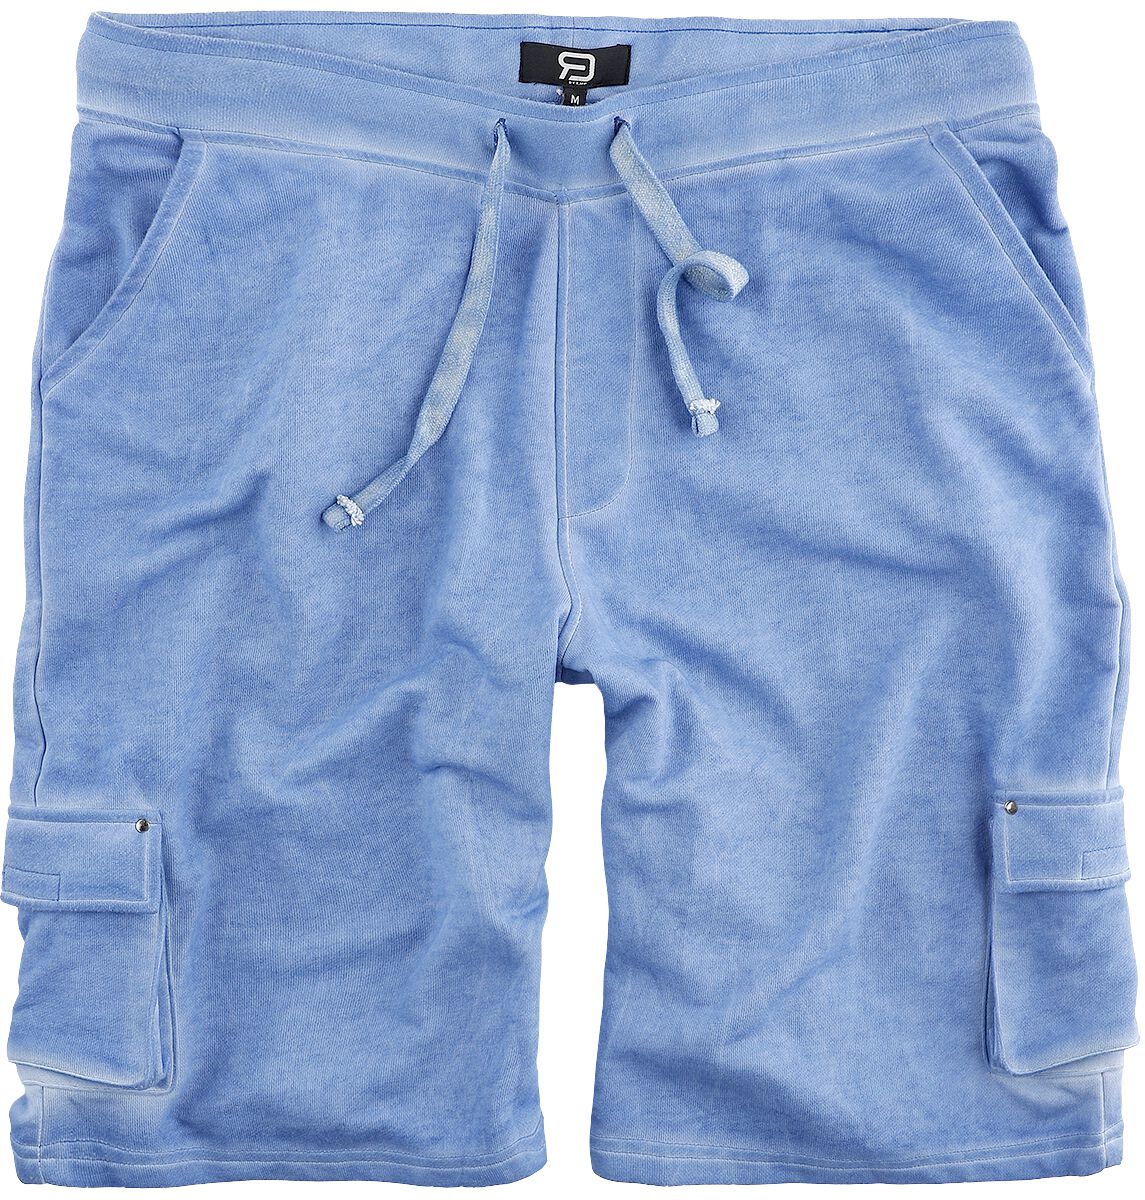 Short de RED by EMP - Shorts im Washed look - S à L - pour Homme - bleu